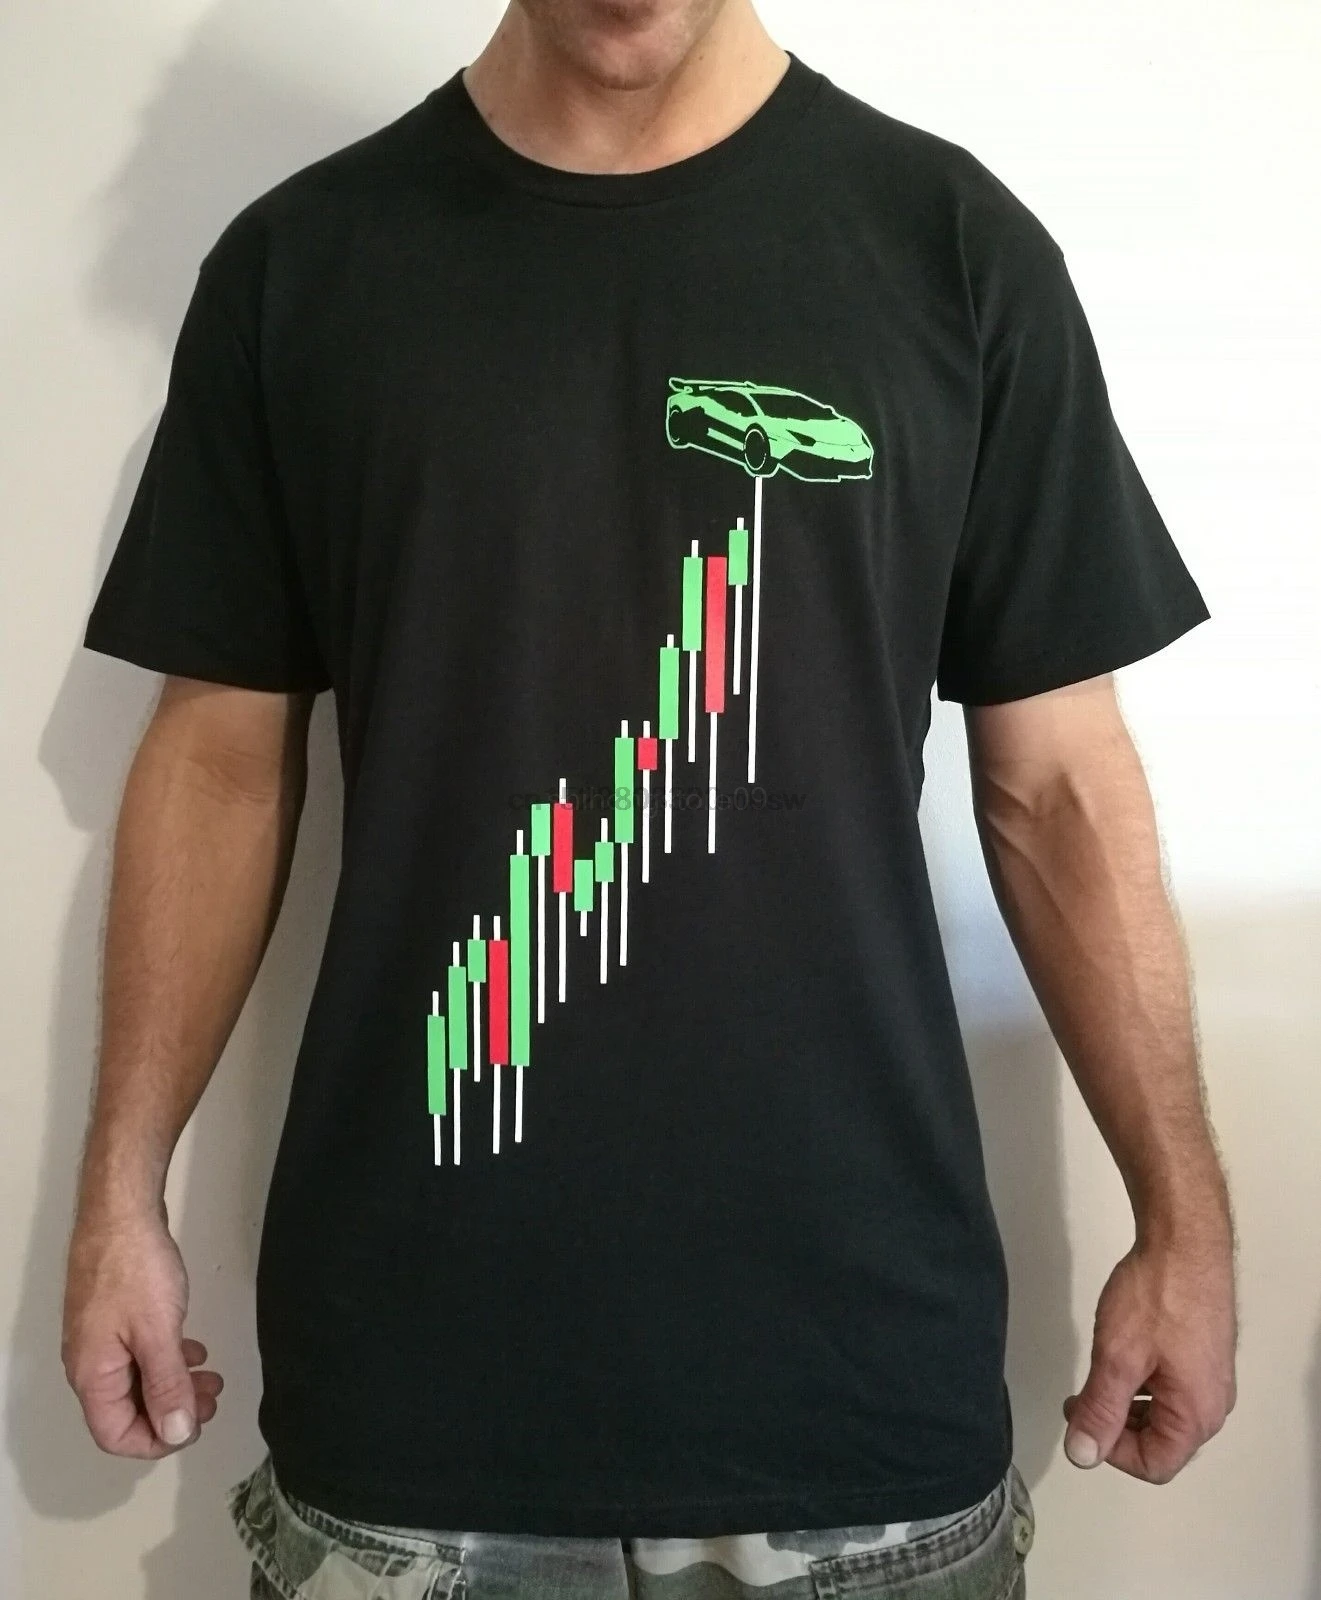 

2019 Summer Short sleeve Fashion Tee Shirt Bitcoin cryptocurrency blockchain lambo chart graph shirt